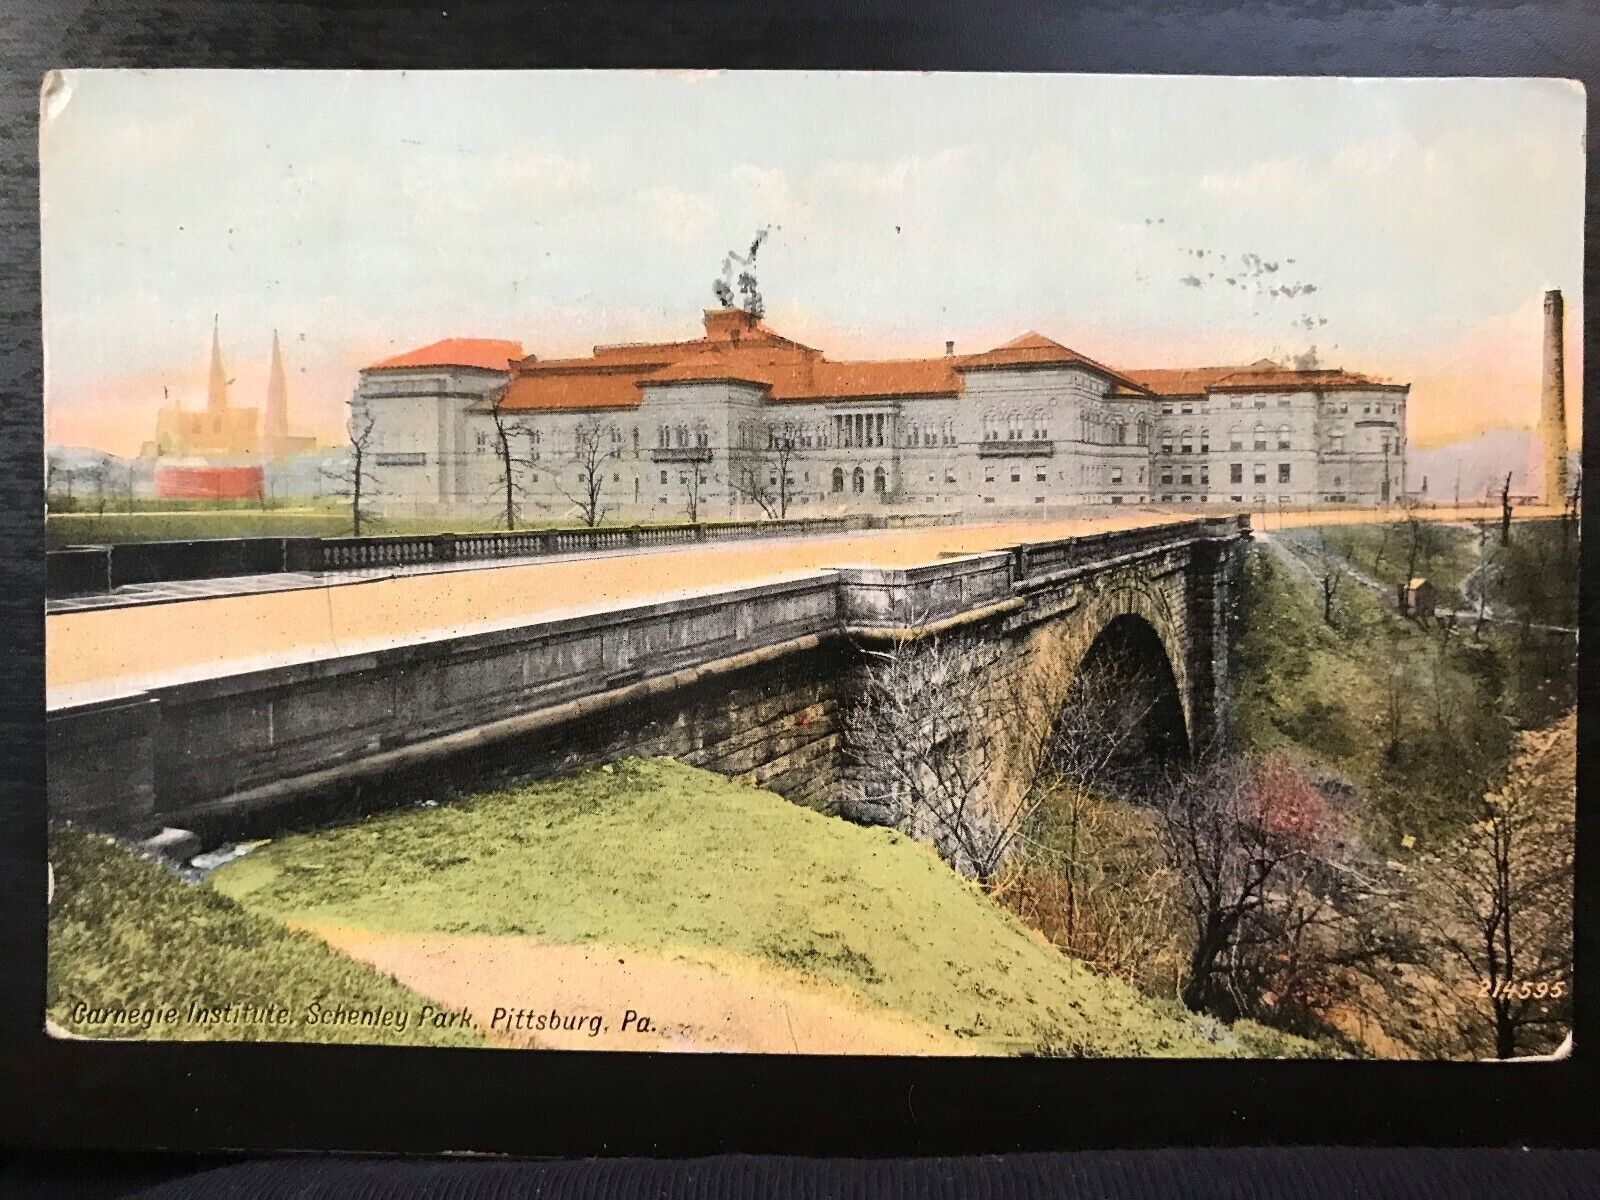 Vintage Postcard 1911 Carnegie Institute Schenley Park Pittsburgh Pennsylvania